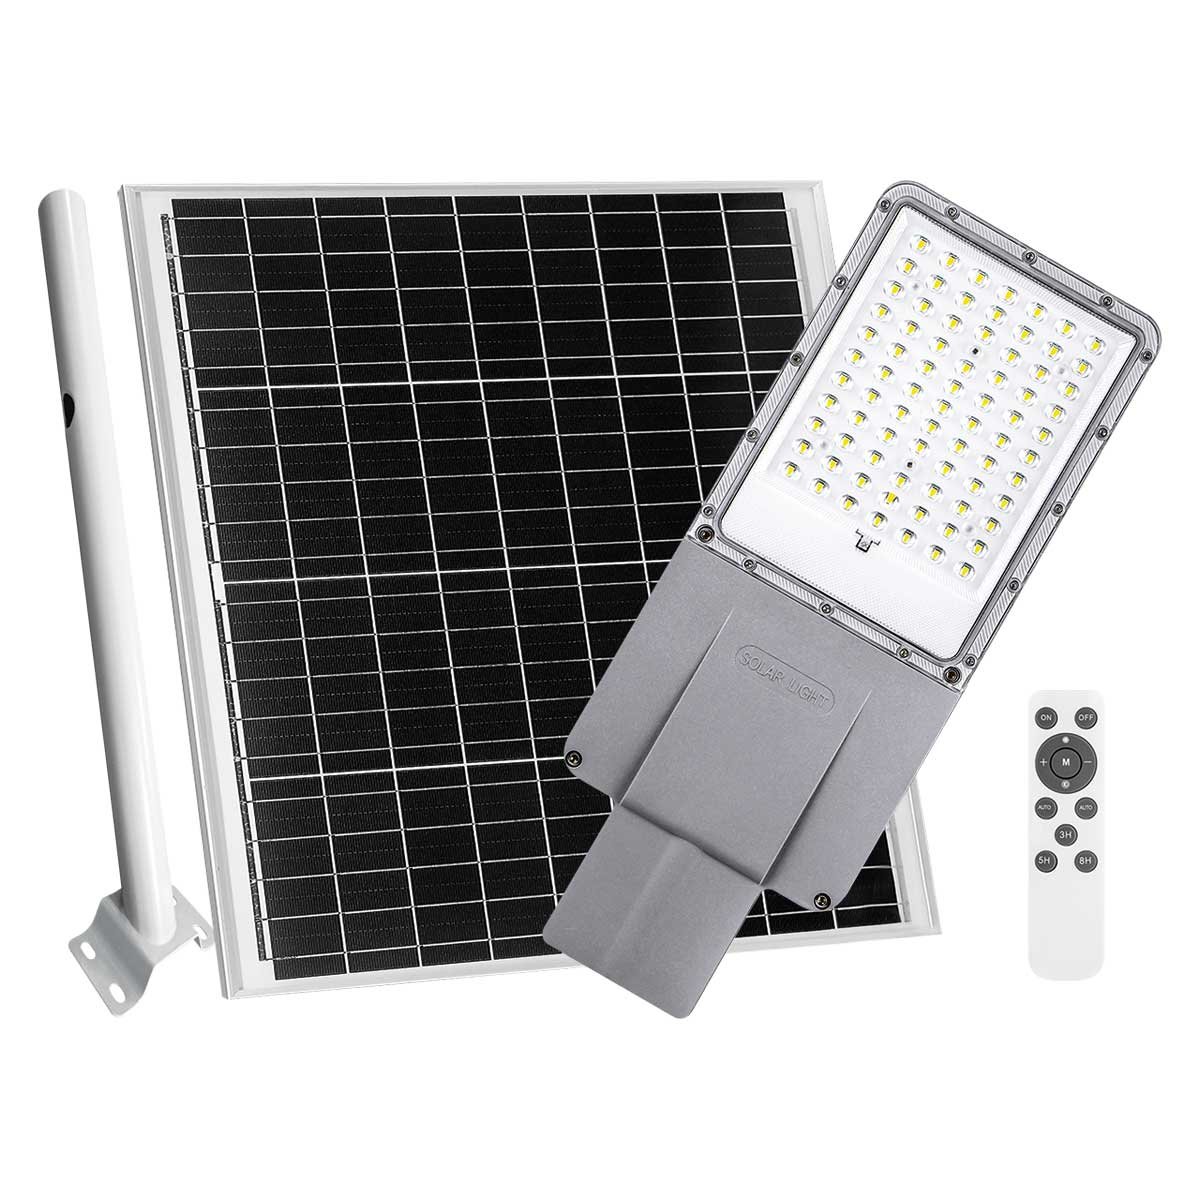 ASL-003 – LUMINARIA LED DE CALLE SOLAR 3200 LÚMENES CON PANEL EXTERNO, CONTROL Y BRAZO SUJETADOR